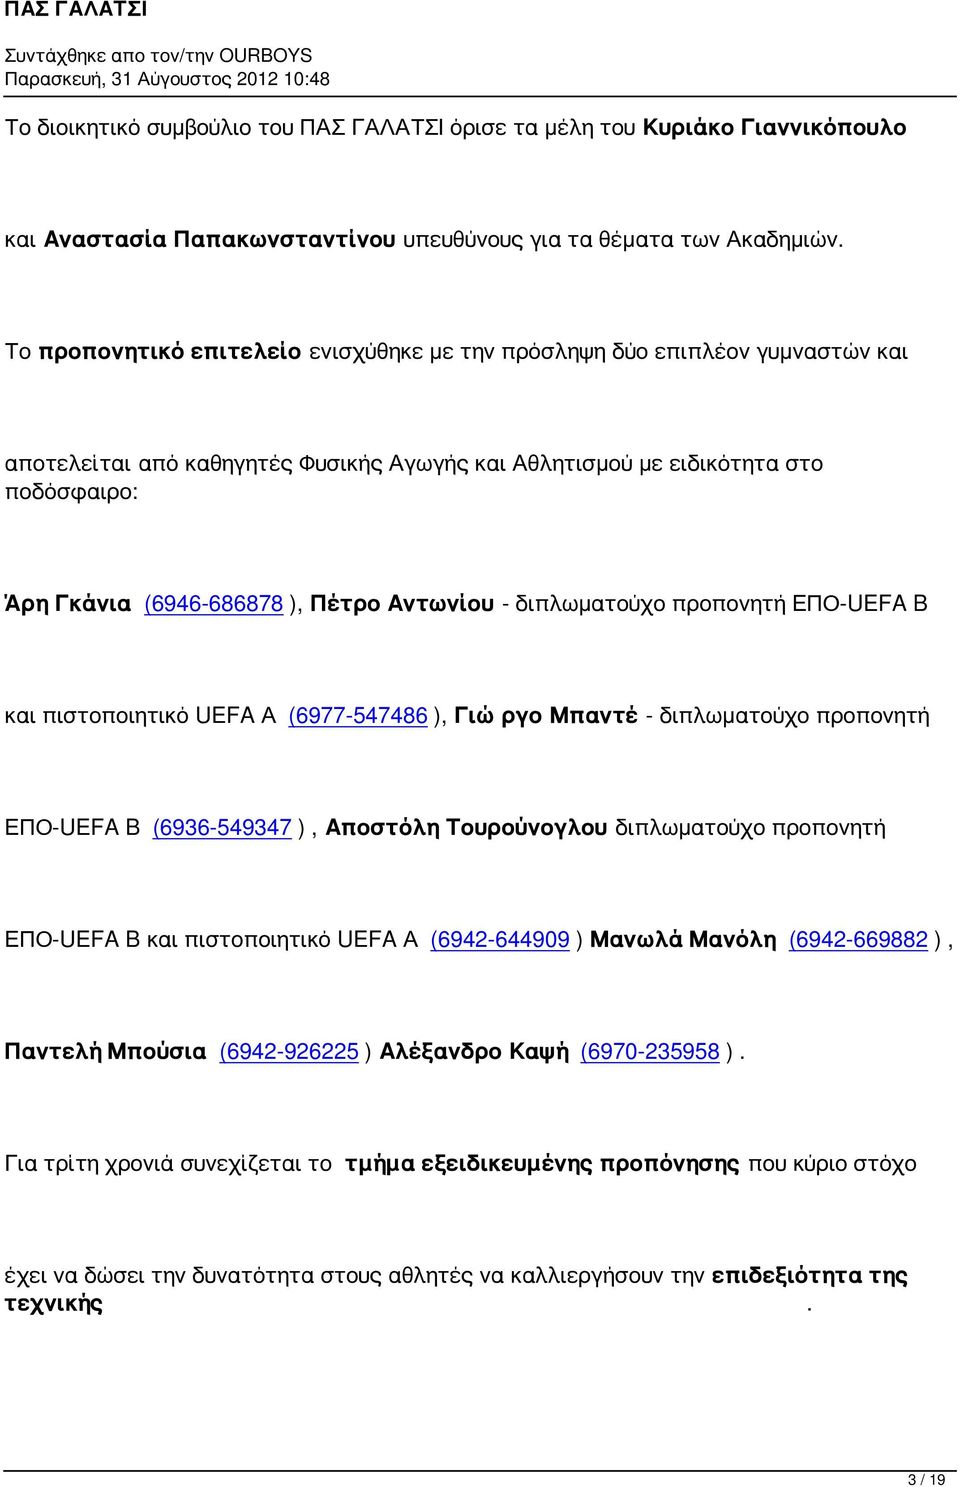 Αντωνίου - διπλωματούχο προπονητή ΕΠΟ-UEFA B και πιστοποιητικό UEFA Α (6977-547486 ), Γιώργο Μπαντέ - διπλωματούχο προπονητή ΕΠΟ-UEFA B (6936-549347 ), Αποστόλη Τουρούνογλου διπλωματούχο προπονητή